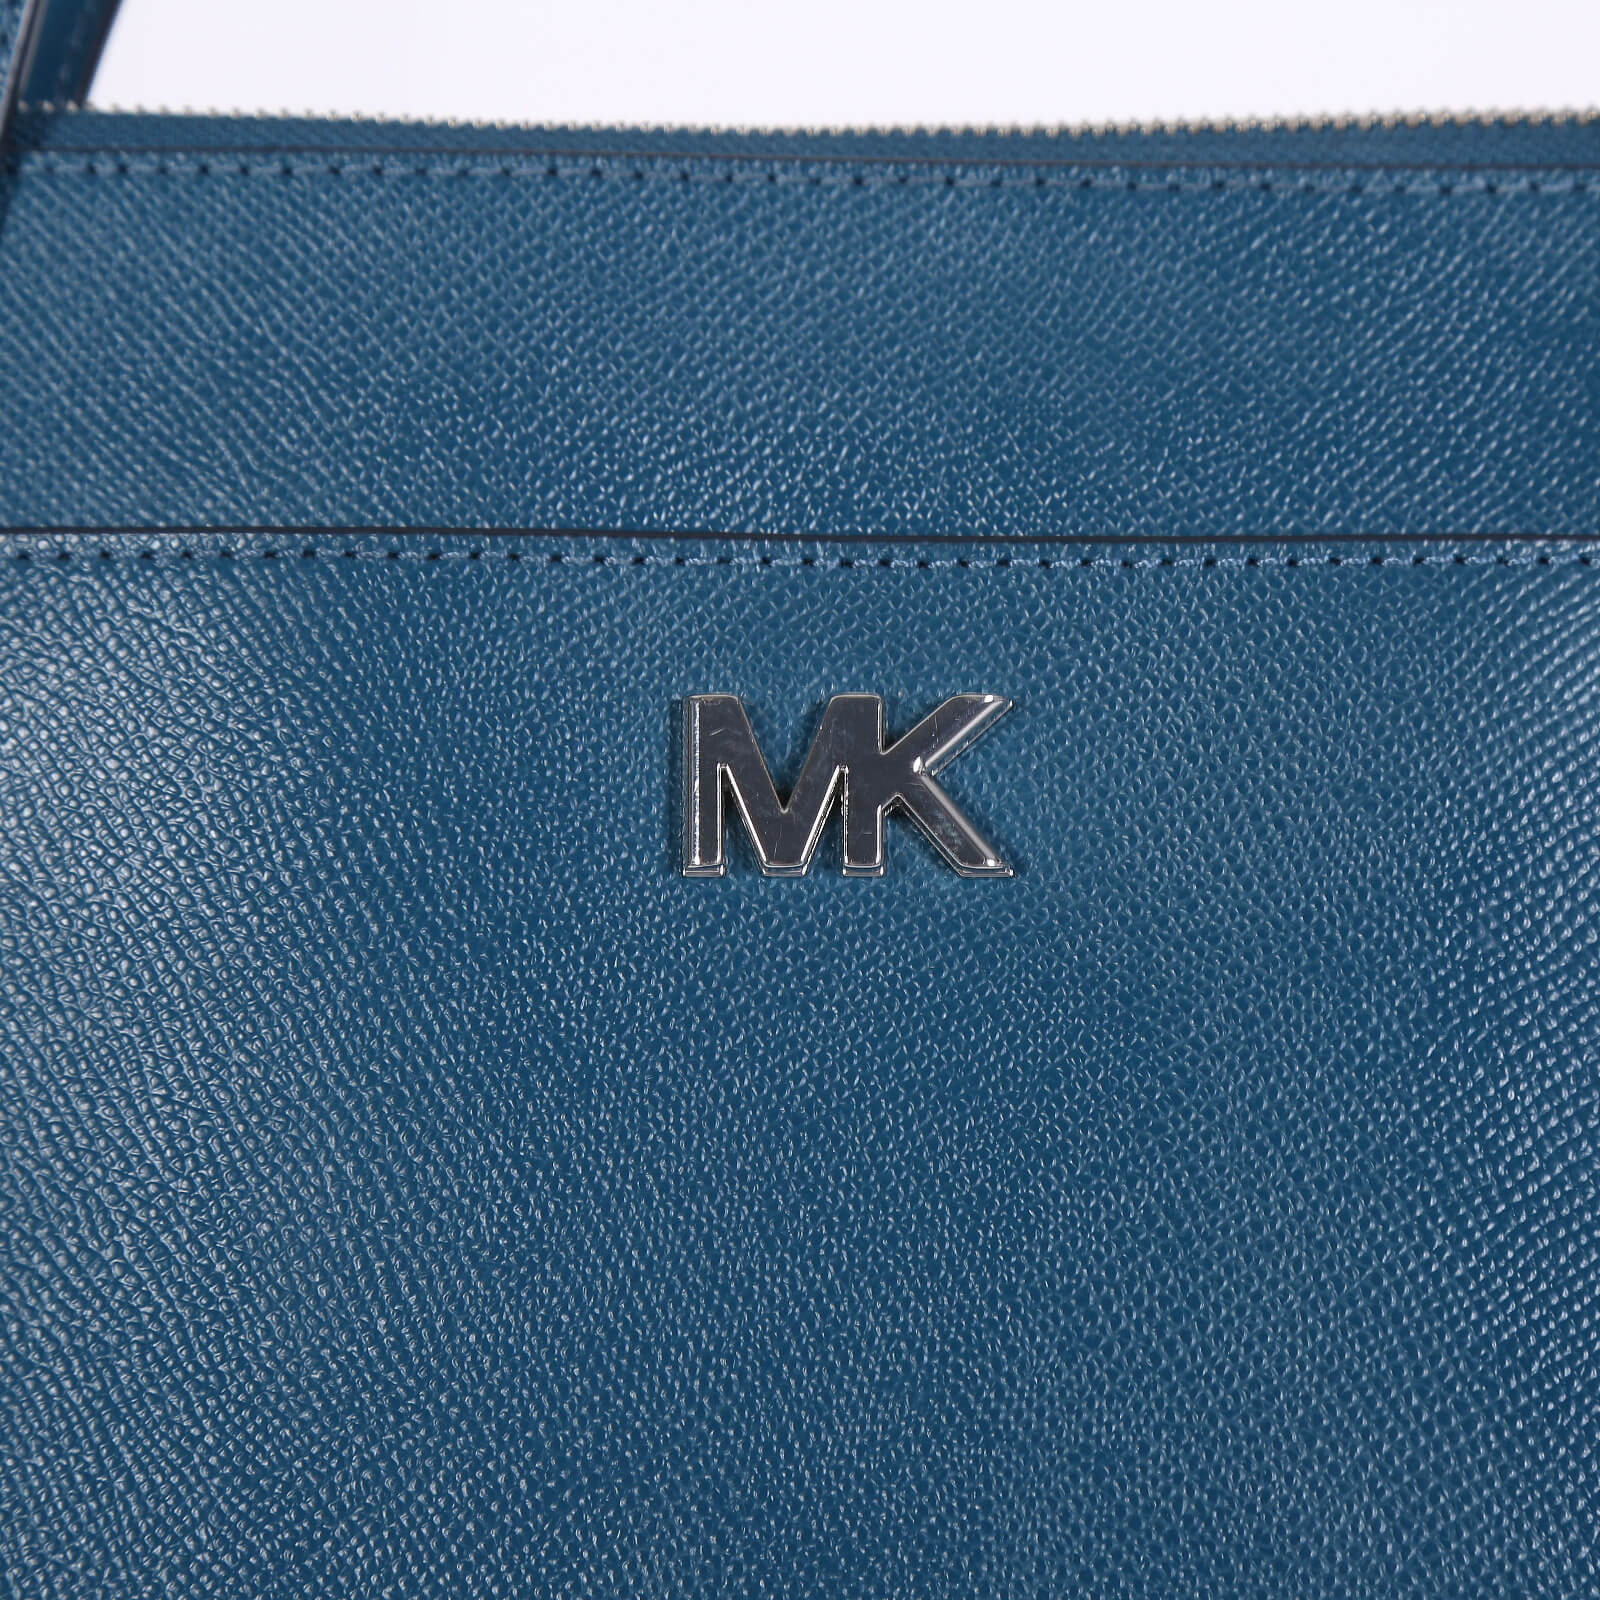 Michael Kors, Bags, Michael Kors Maddie Medium Crossgrain Leather Tote  Bag